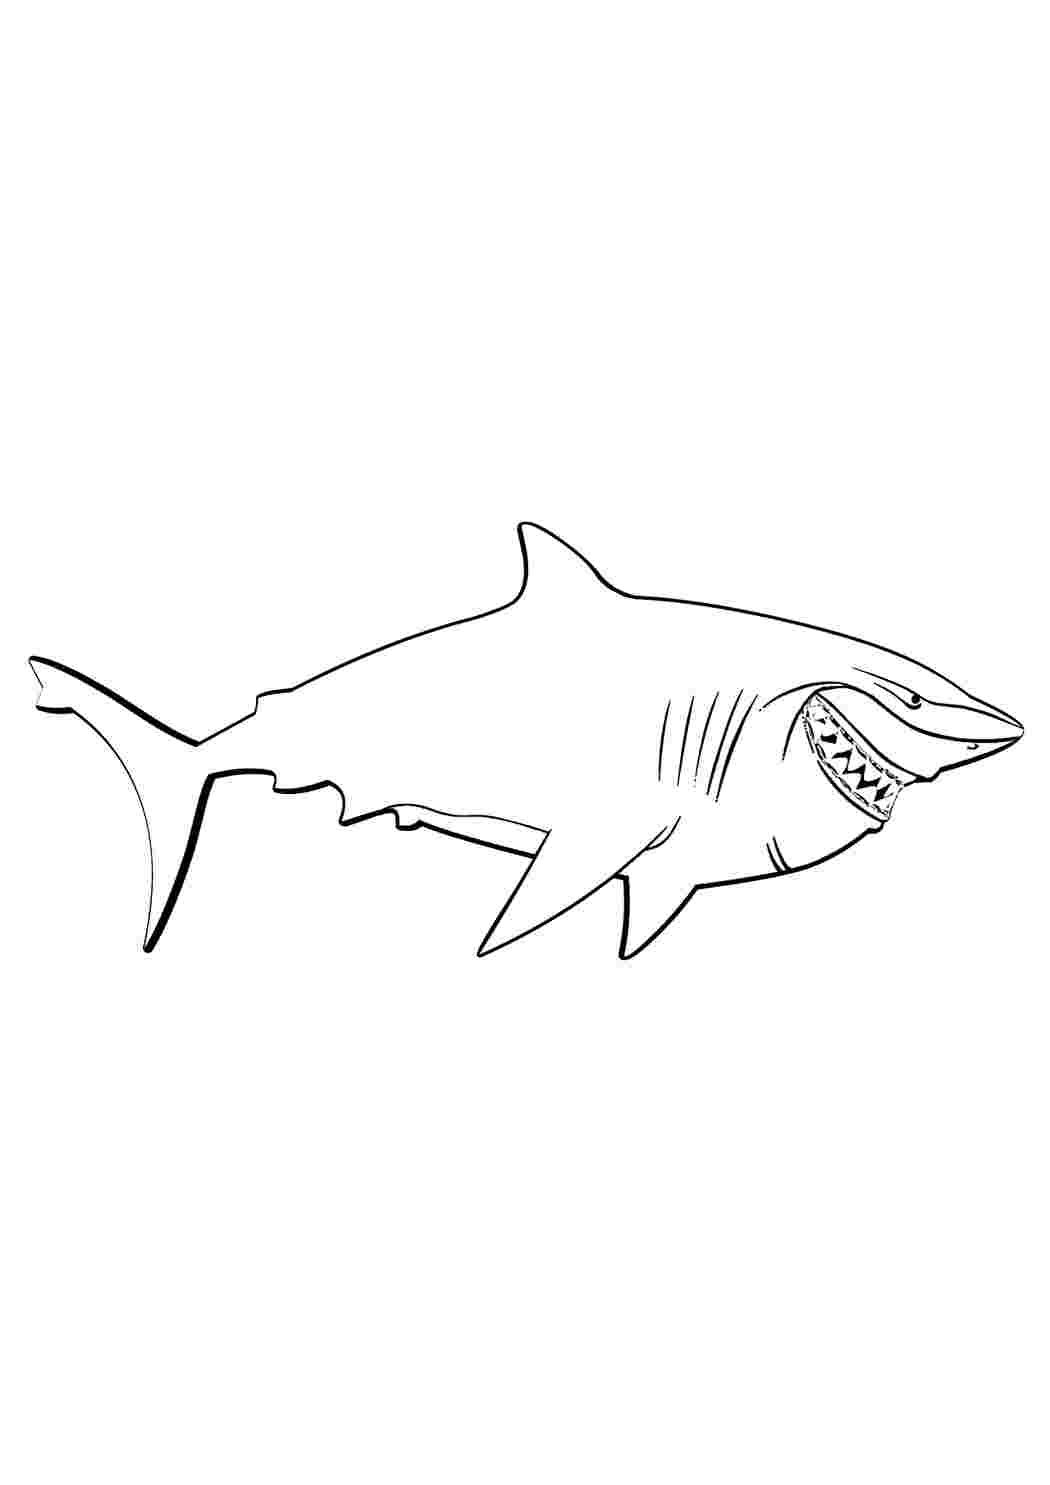 Игра Назад в школу: Книга окраски акул онлайн - играть бесплатно, без регистрации